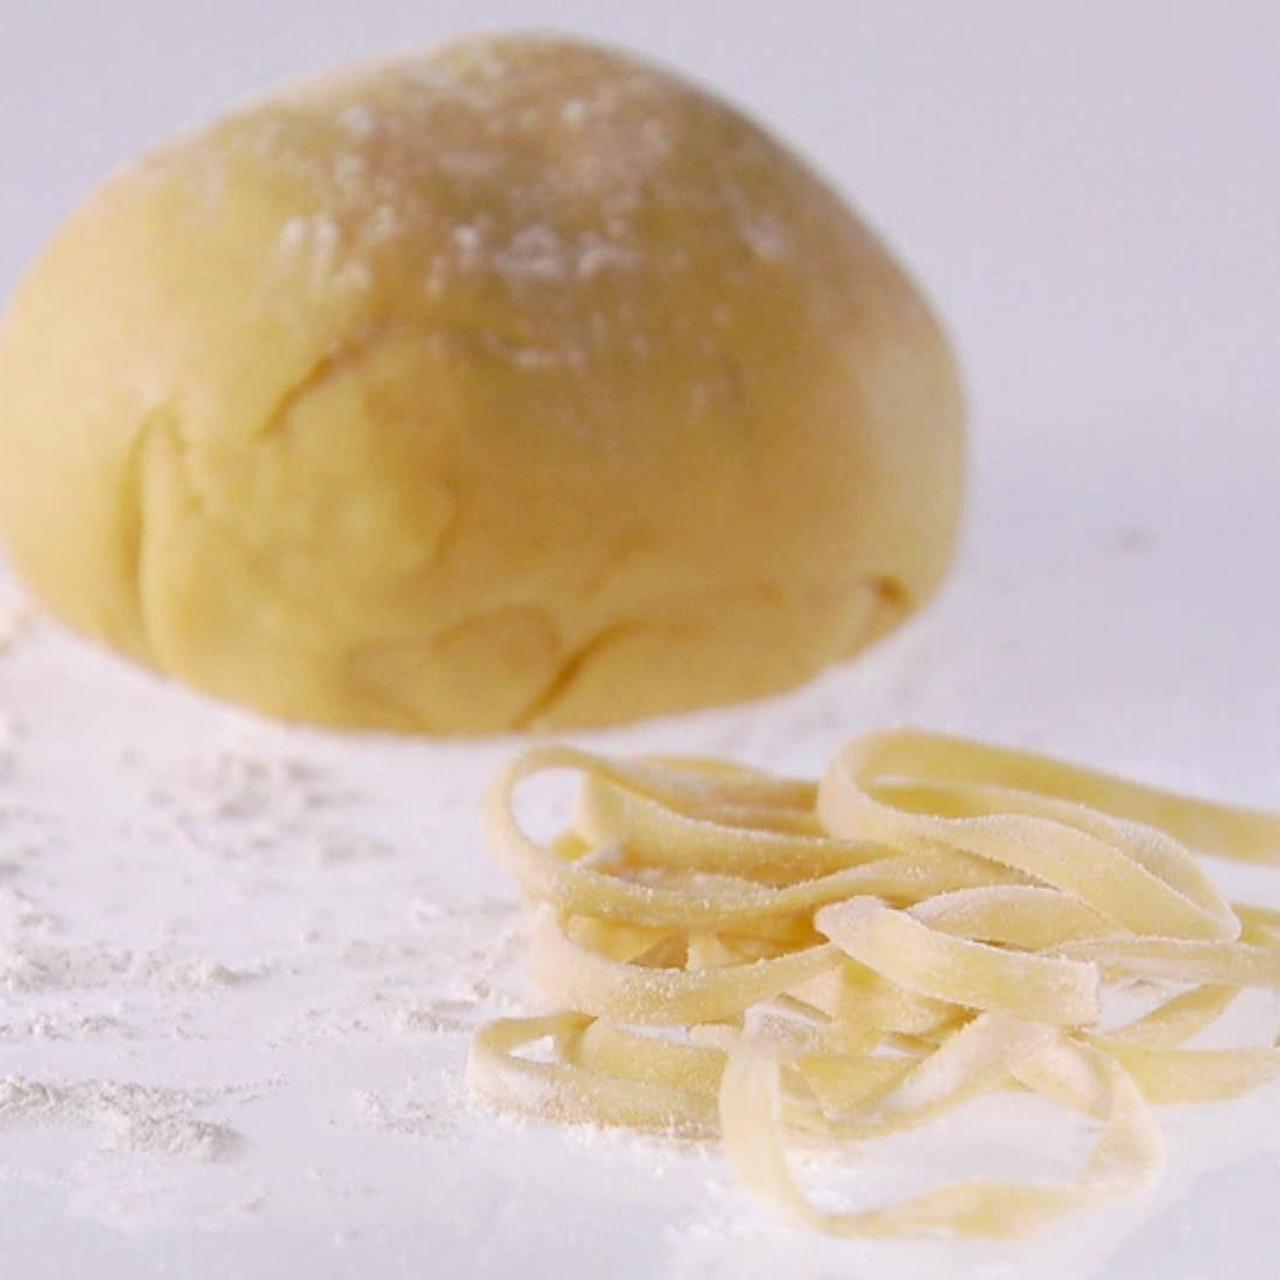 How to make fresh pasta